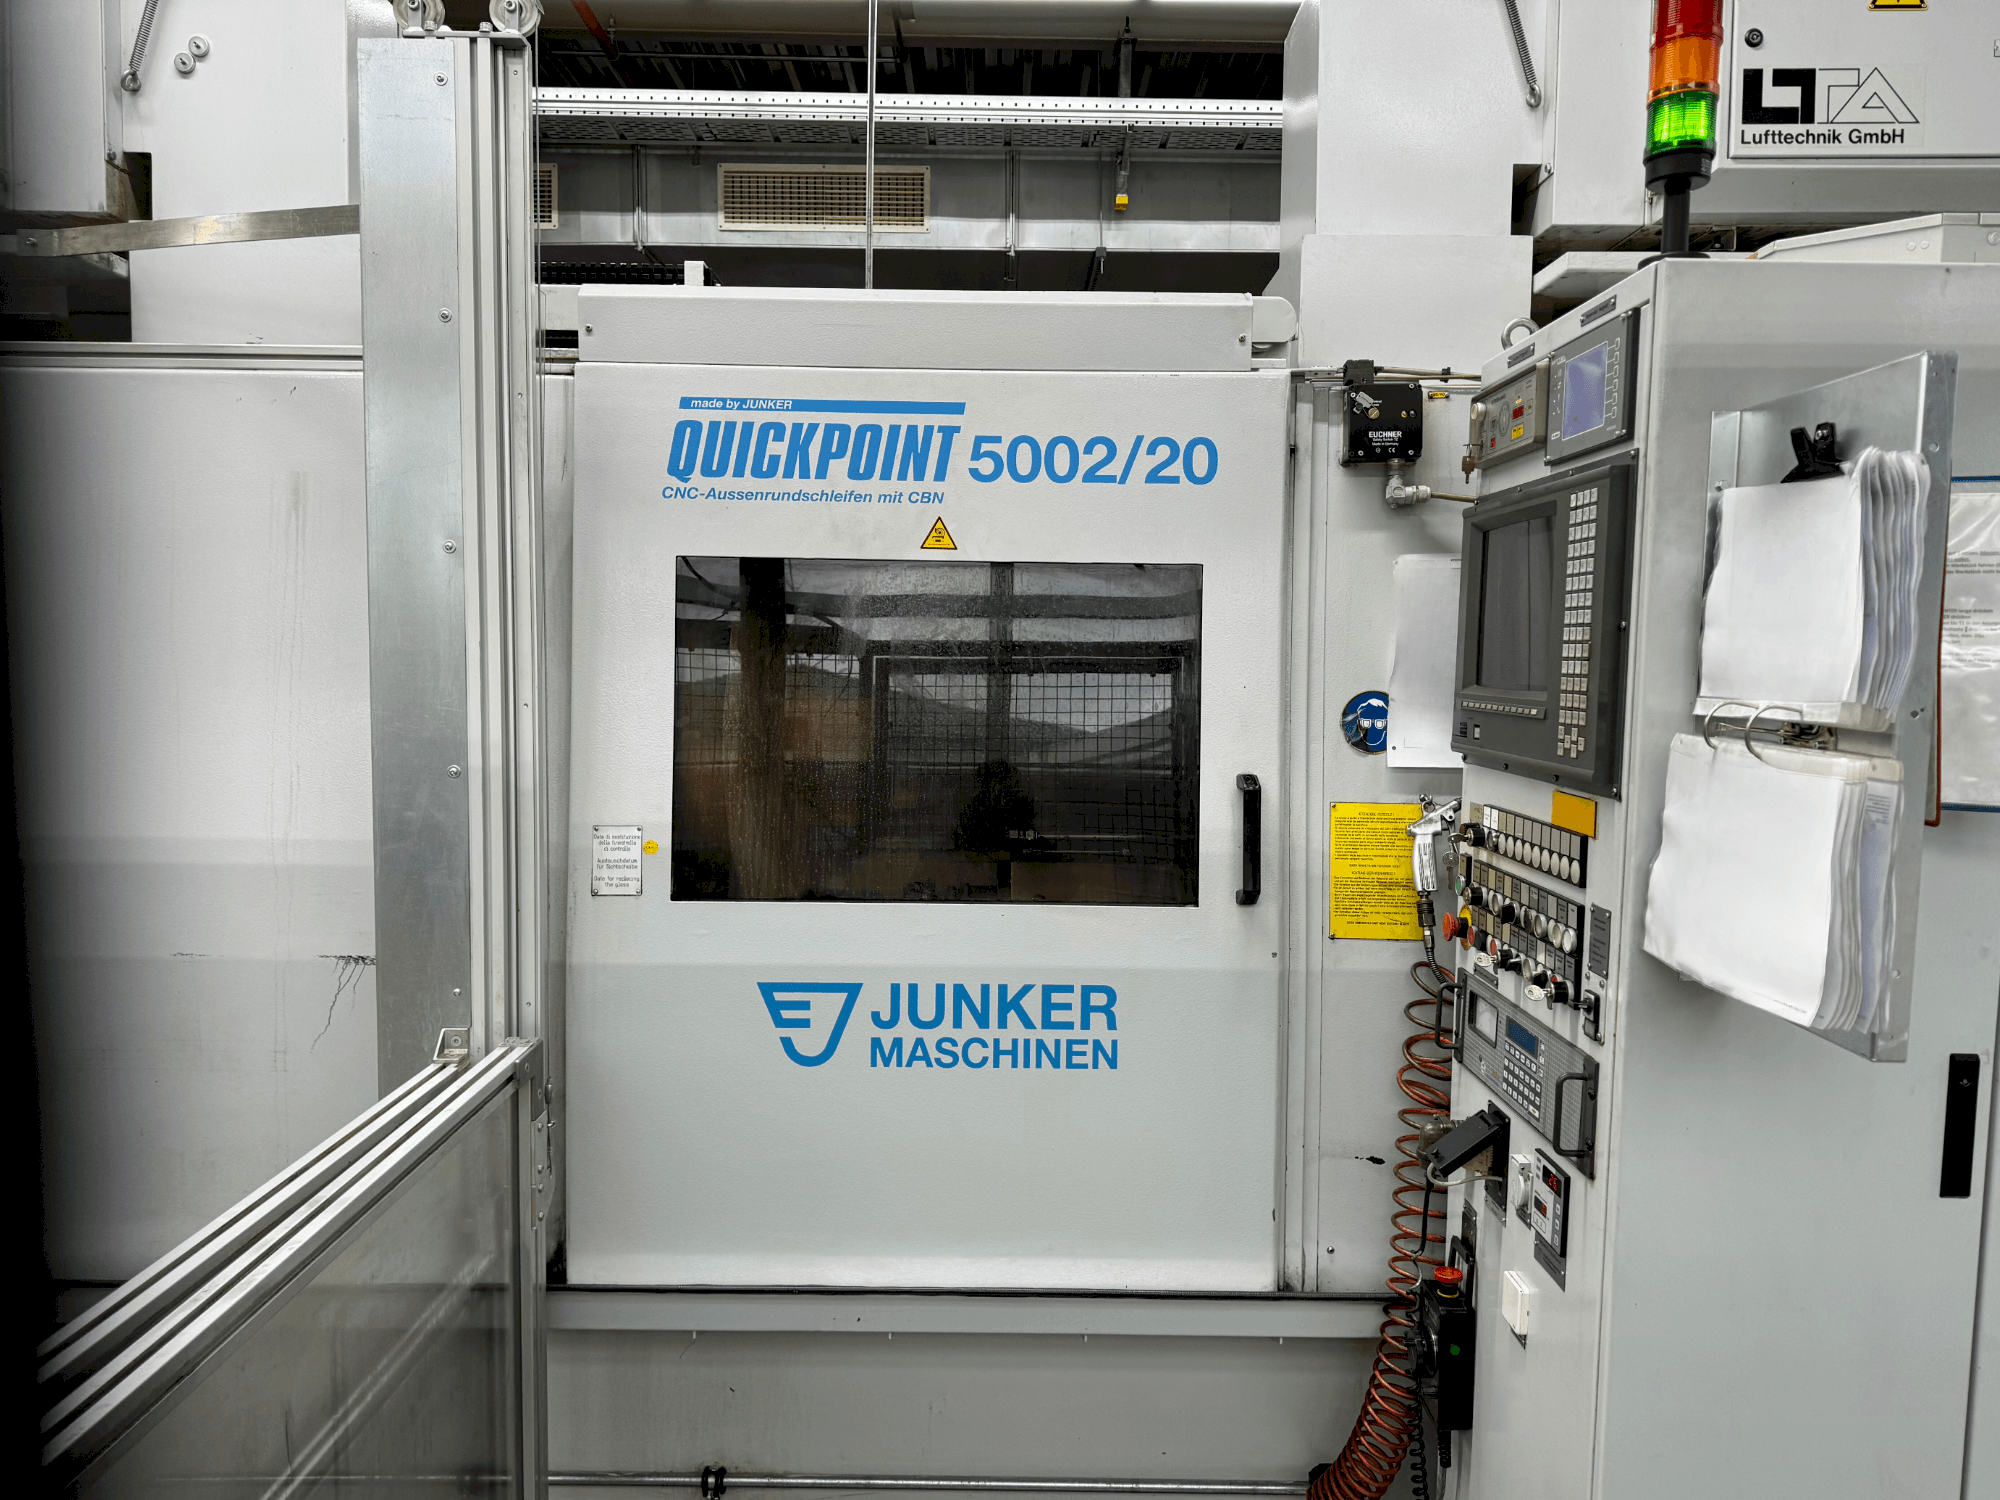 Widok z przodu maszyny JUNKER Quickpoint 5002/20